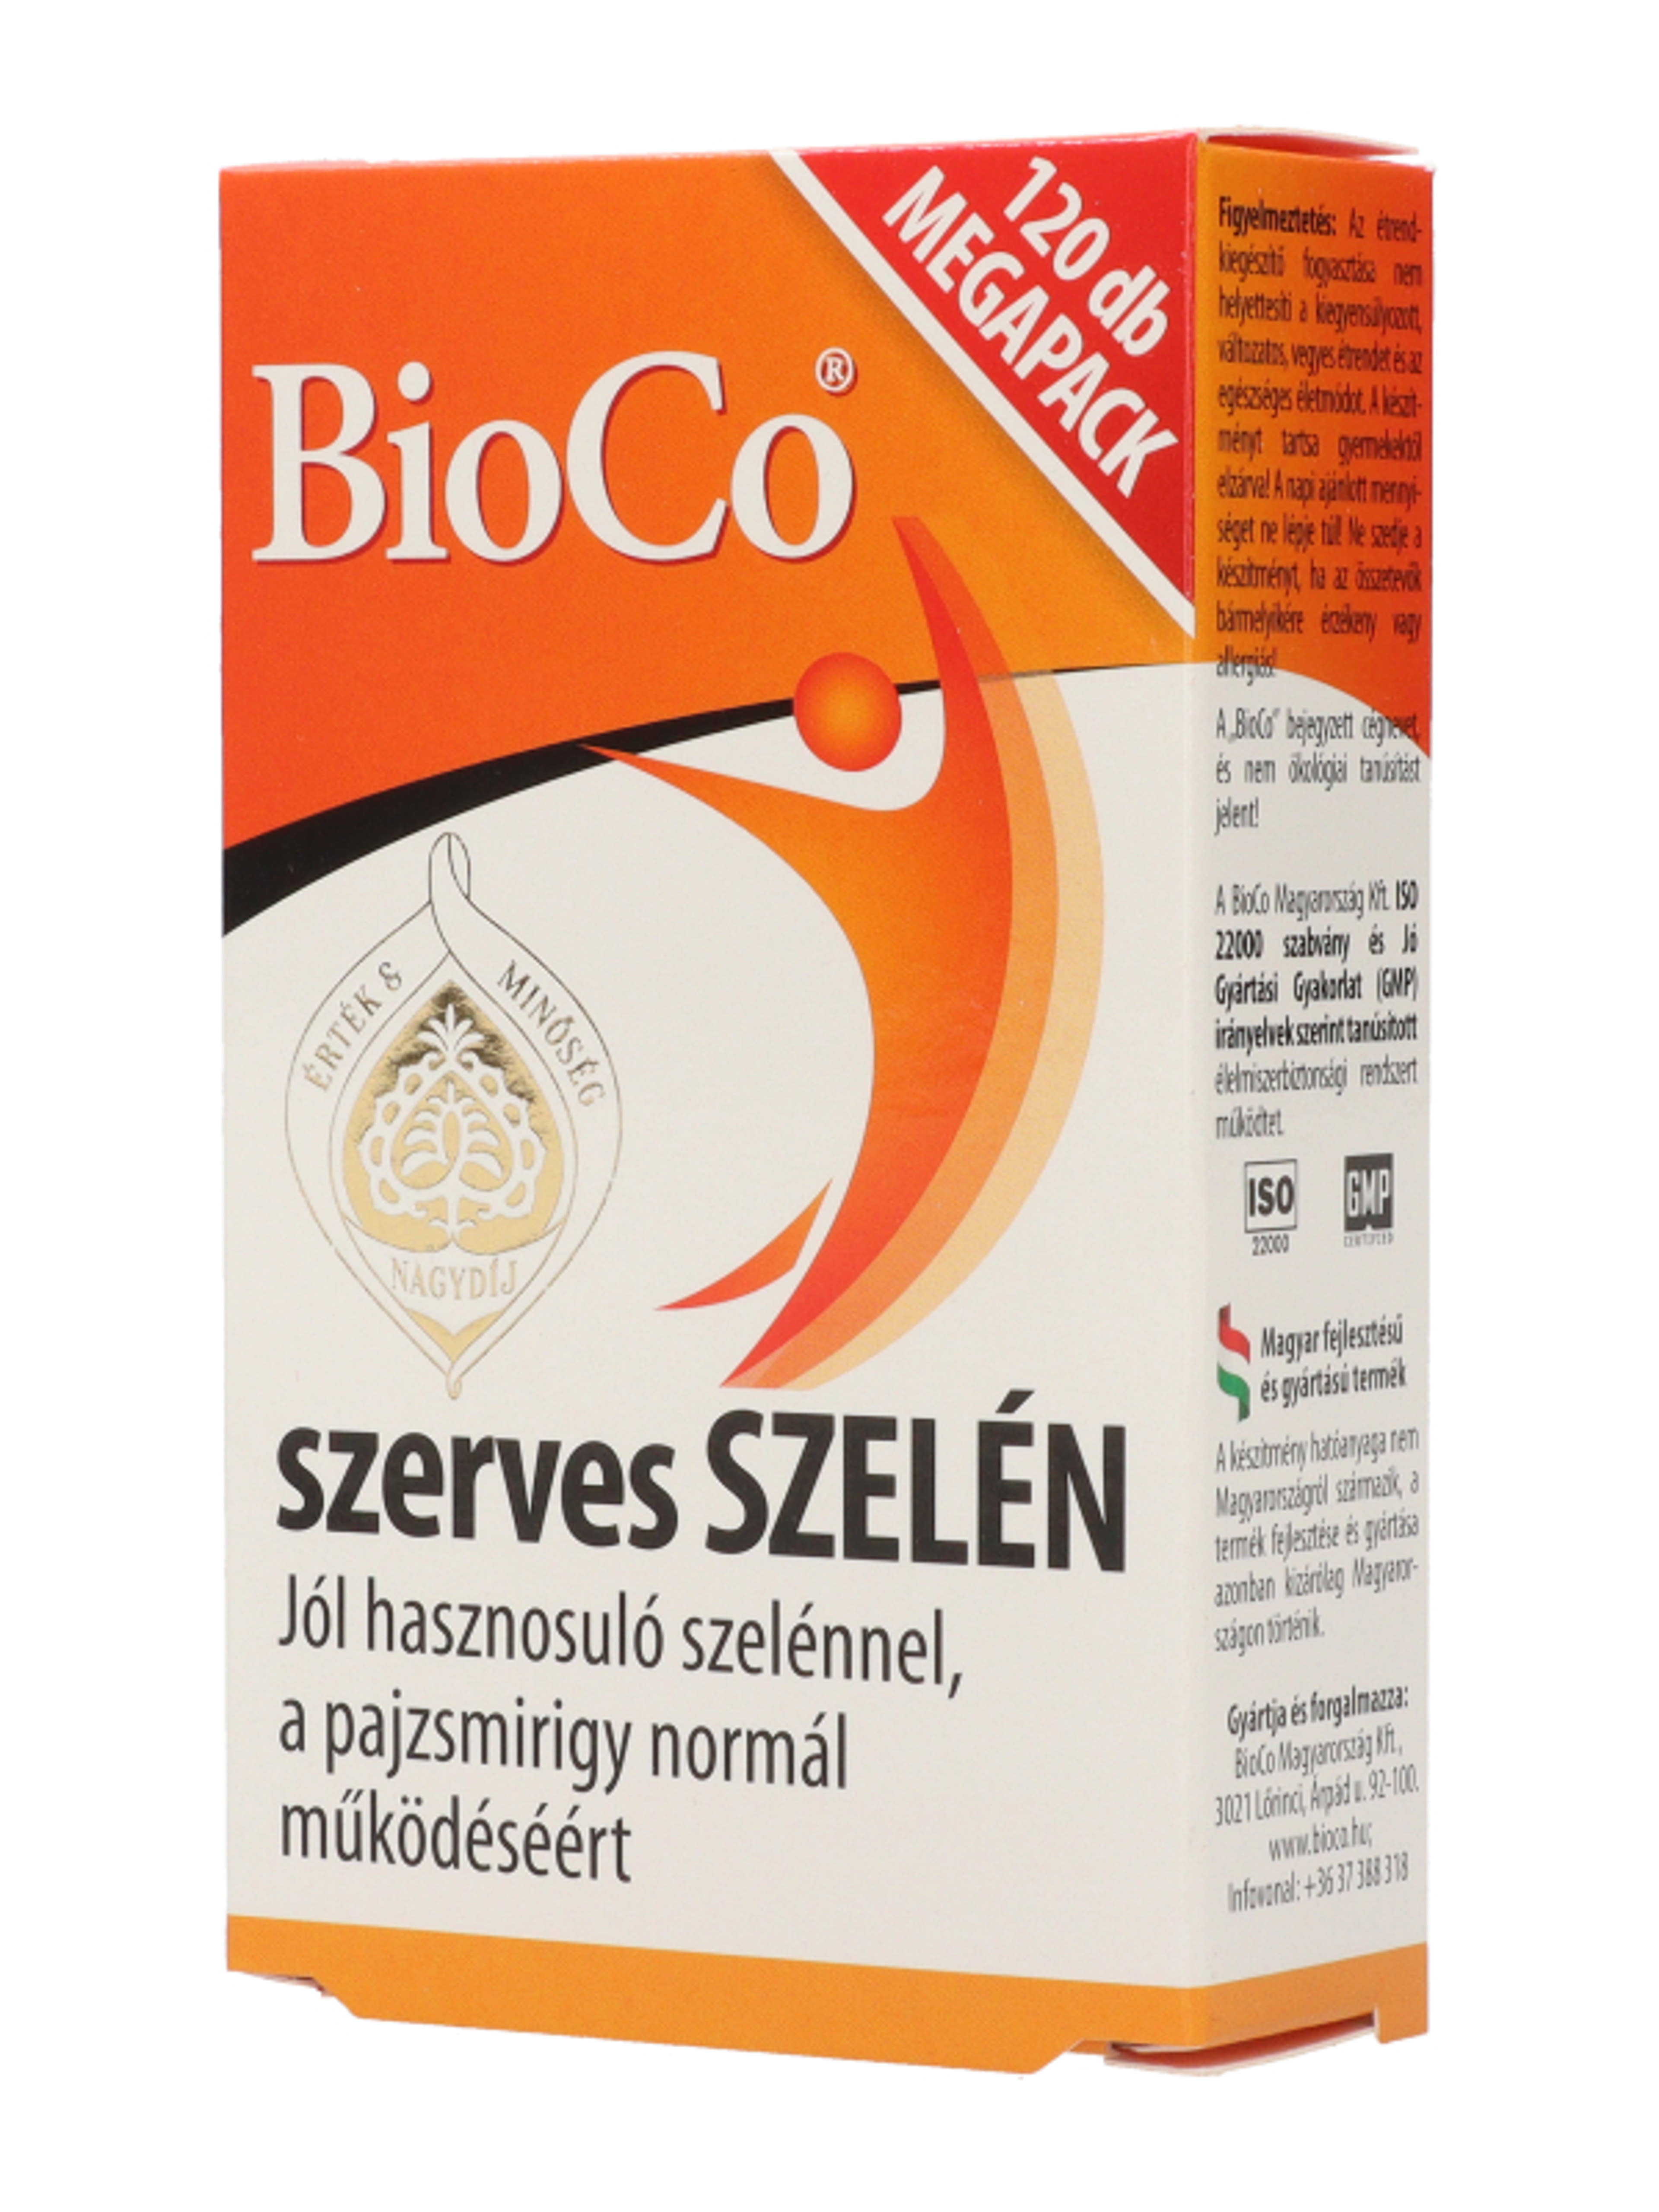 Bioco szerves szelén megapack tabletta - 120 db-5